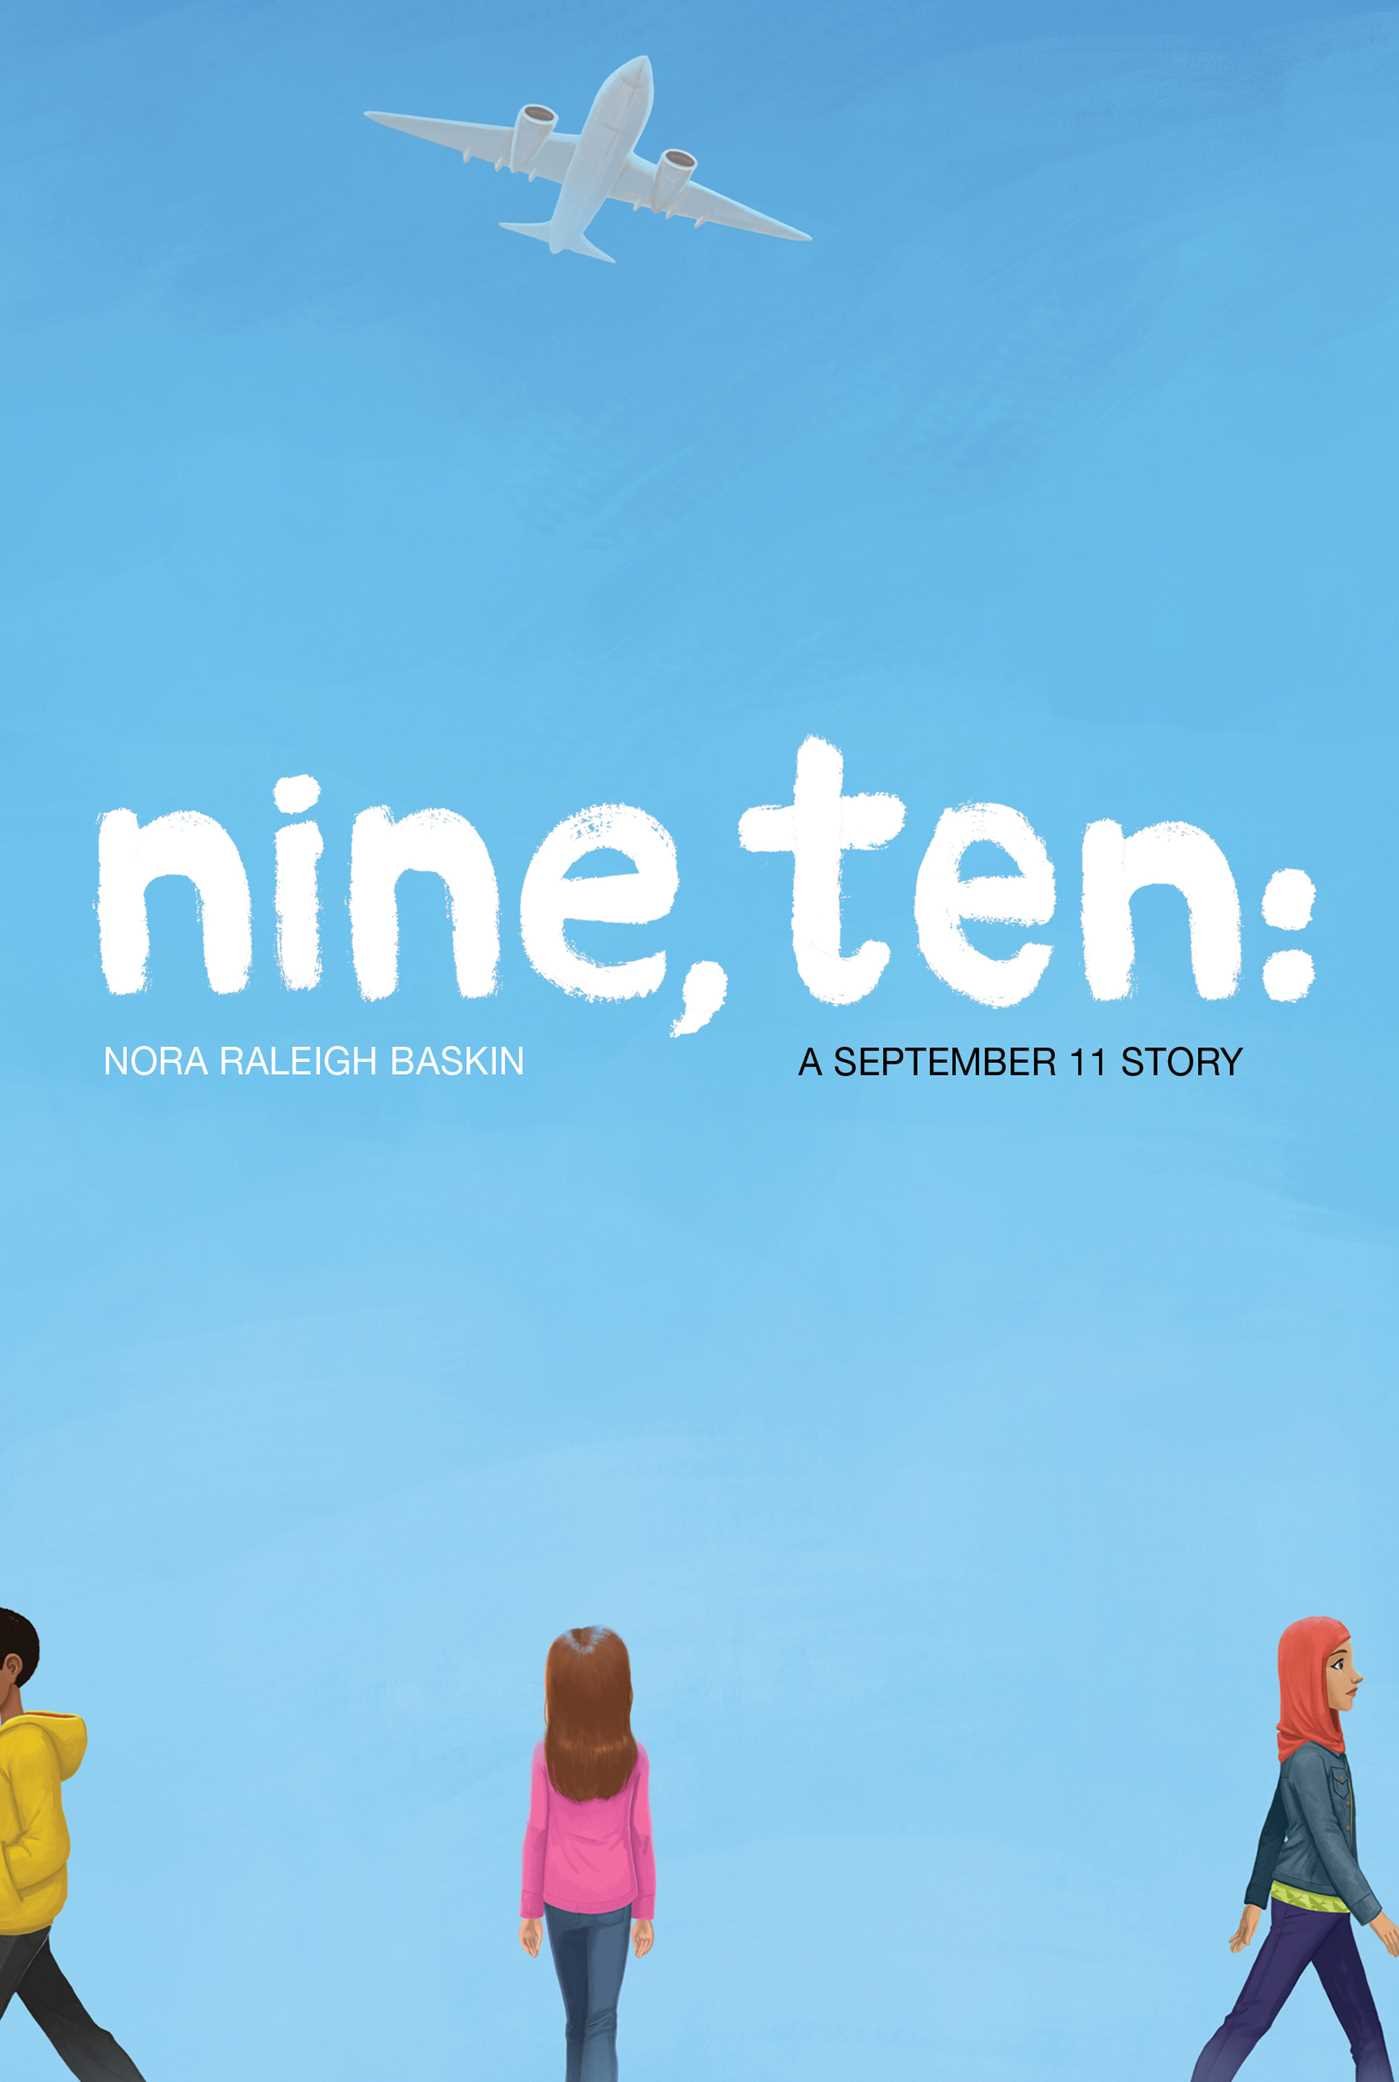 Image for "Nine, Ten: A September 11 Story"